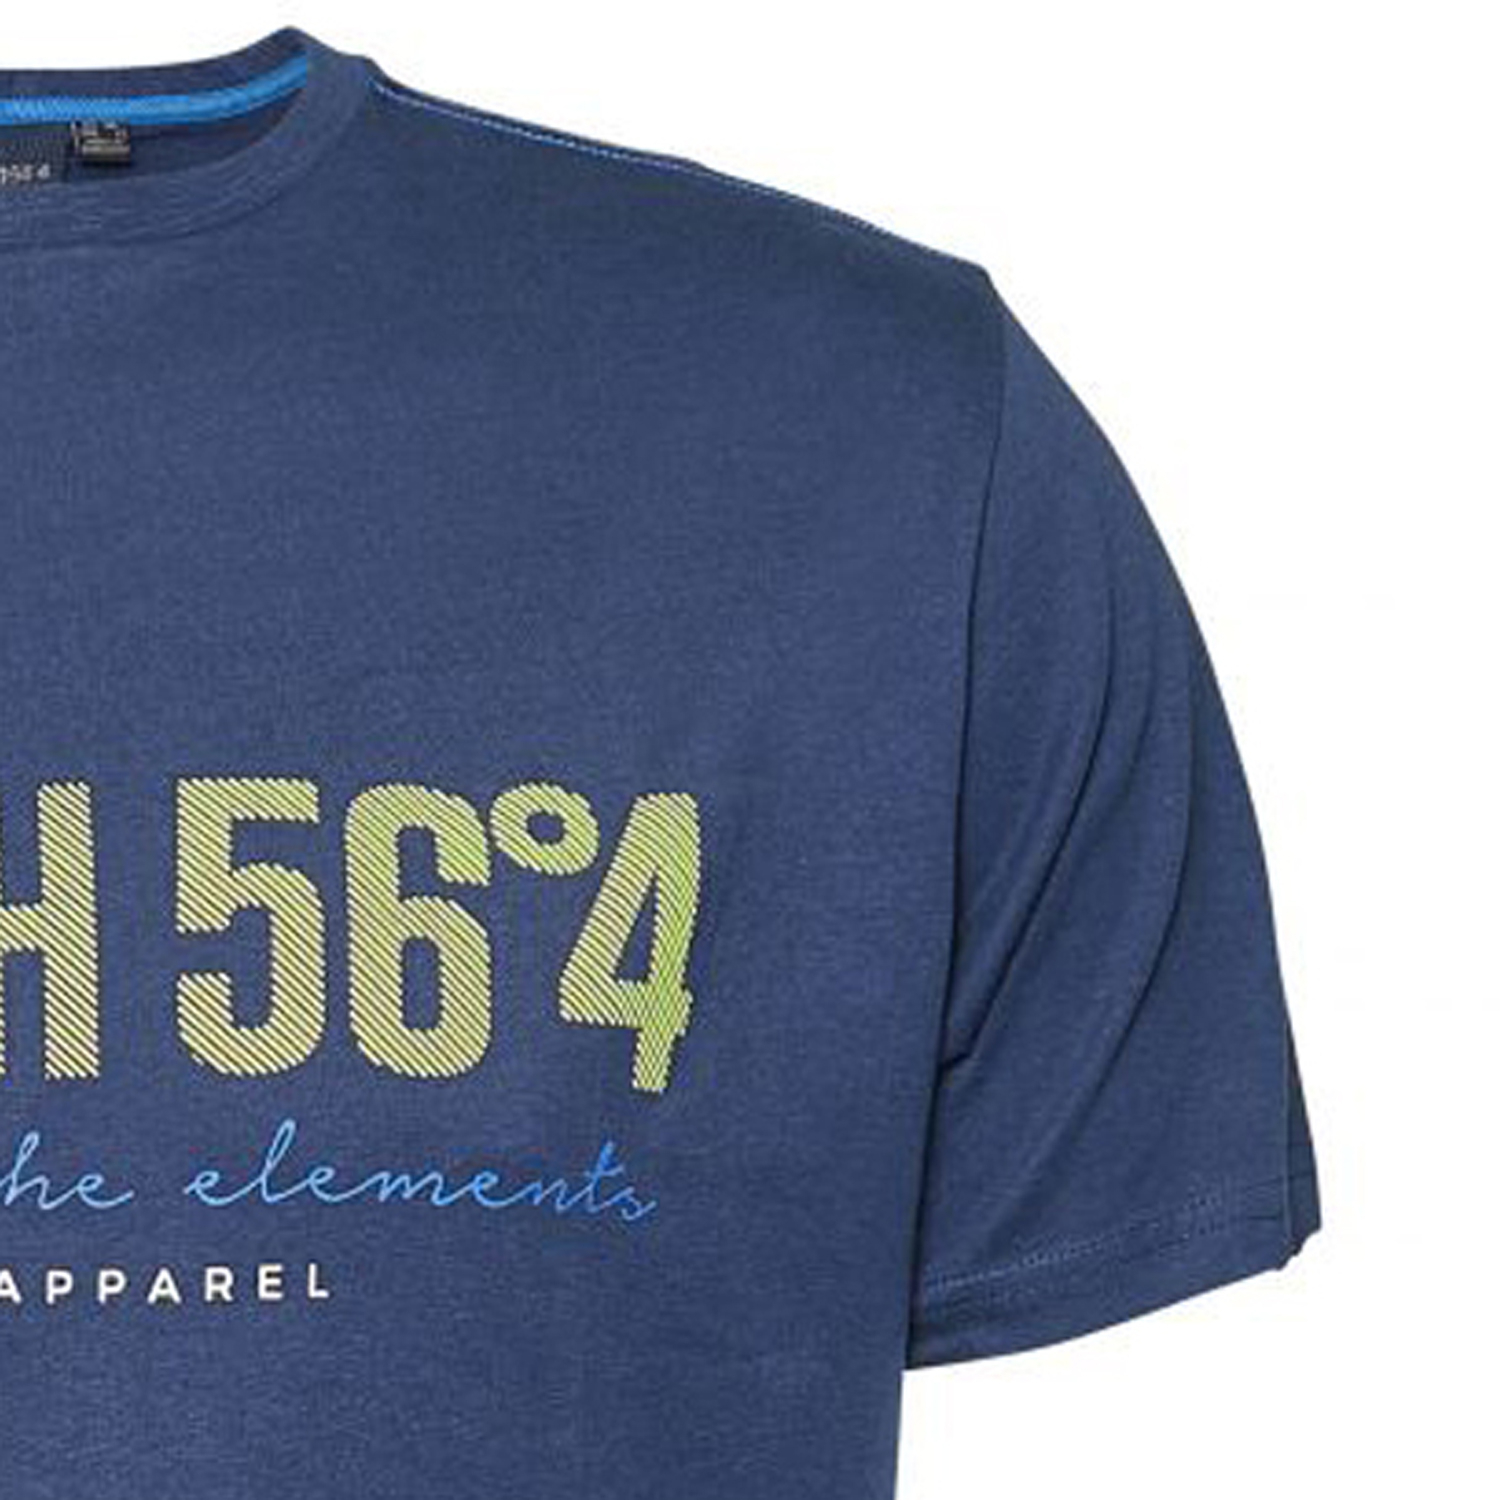 T-shirt bleu foncé pour homme de North 56°4 // grandes tailles jusqu'au 8XL